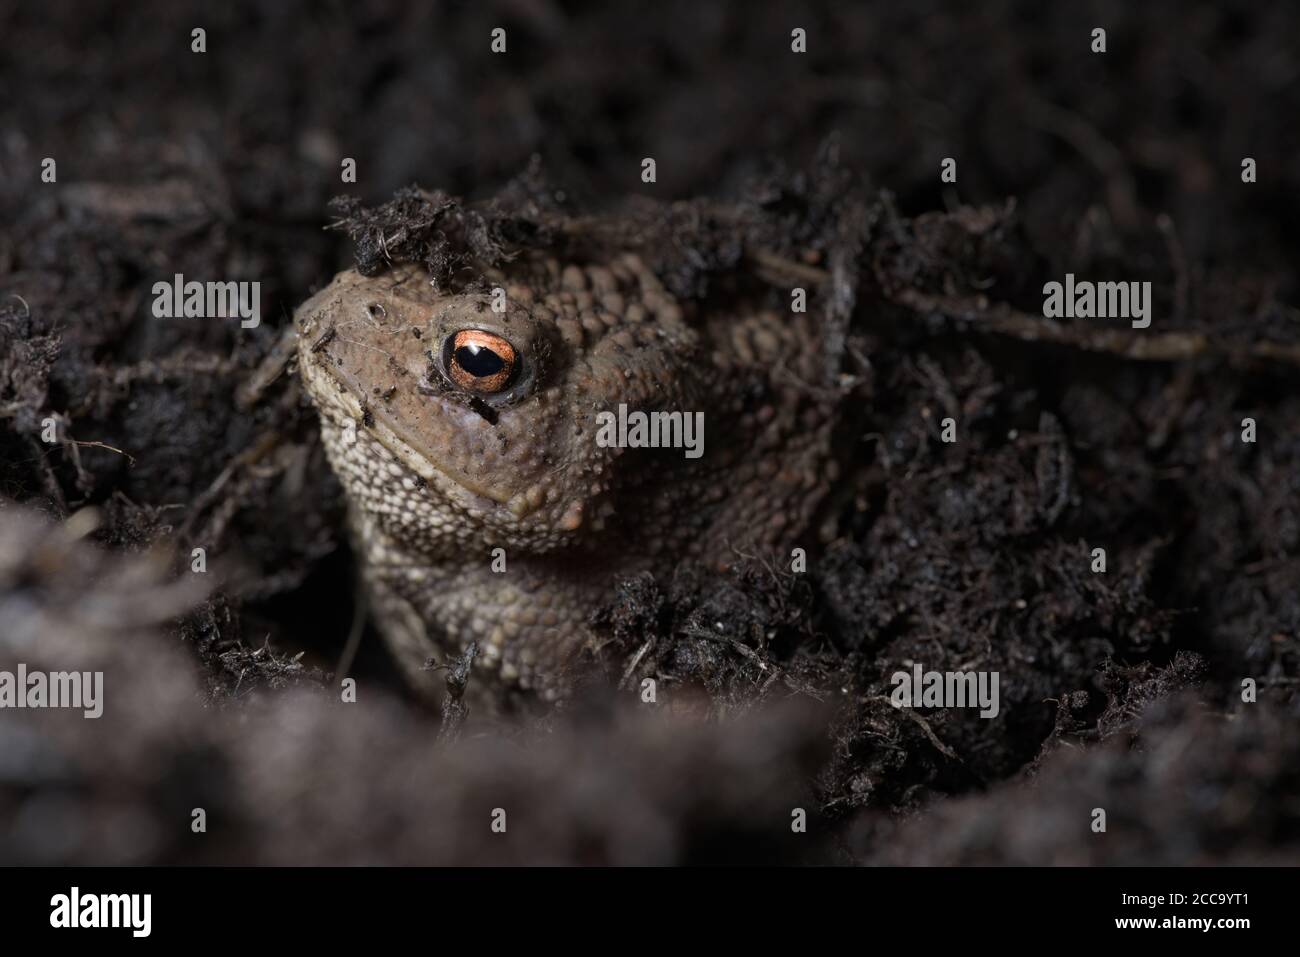 3 - lebendige orange Auge sticht heraus, wie dieses Kröten Gesicht heraus unter dem Kompost guckst, in dem die Kröte sich versteckt. Seitenprofil Stockfoto